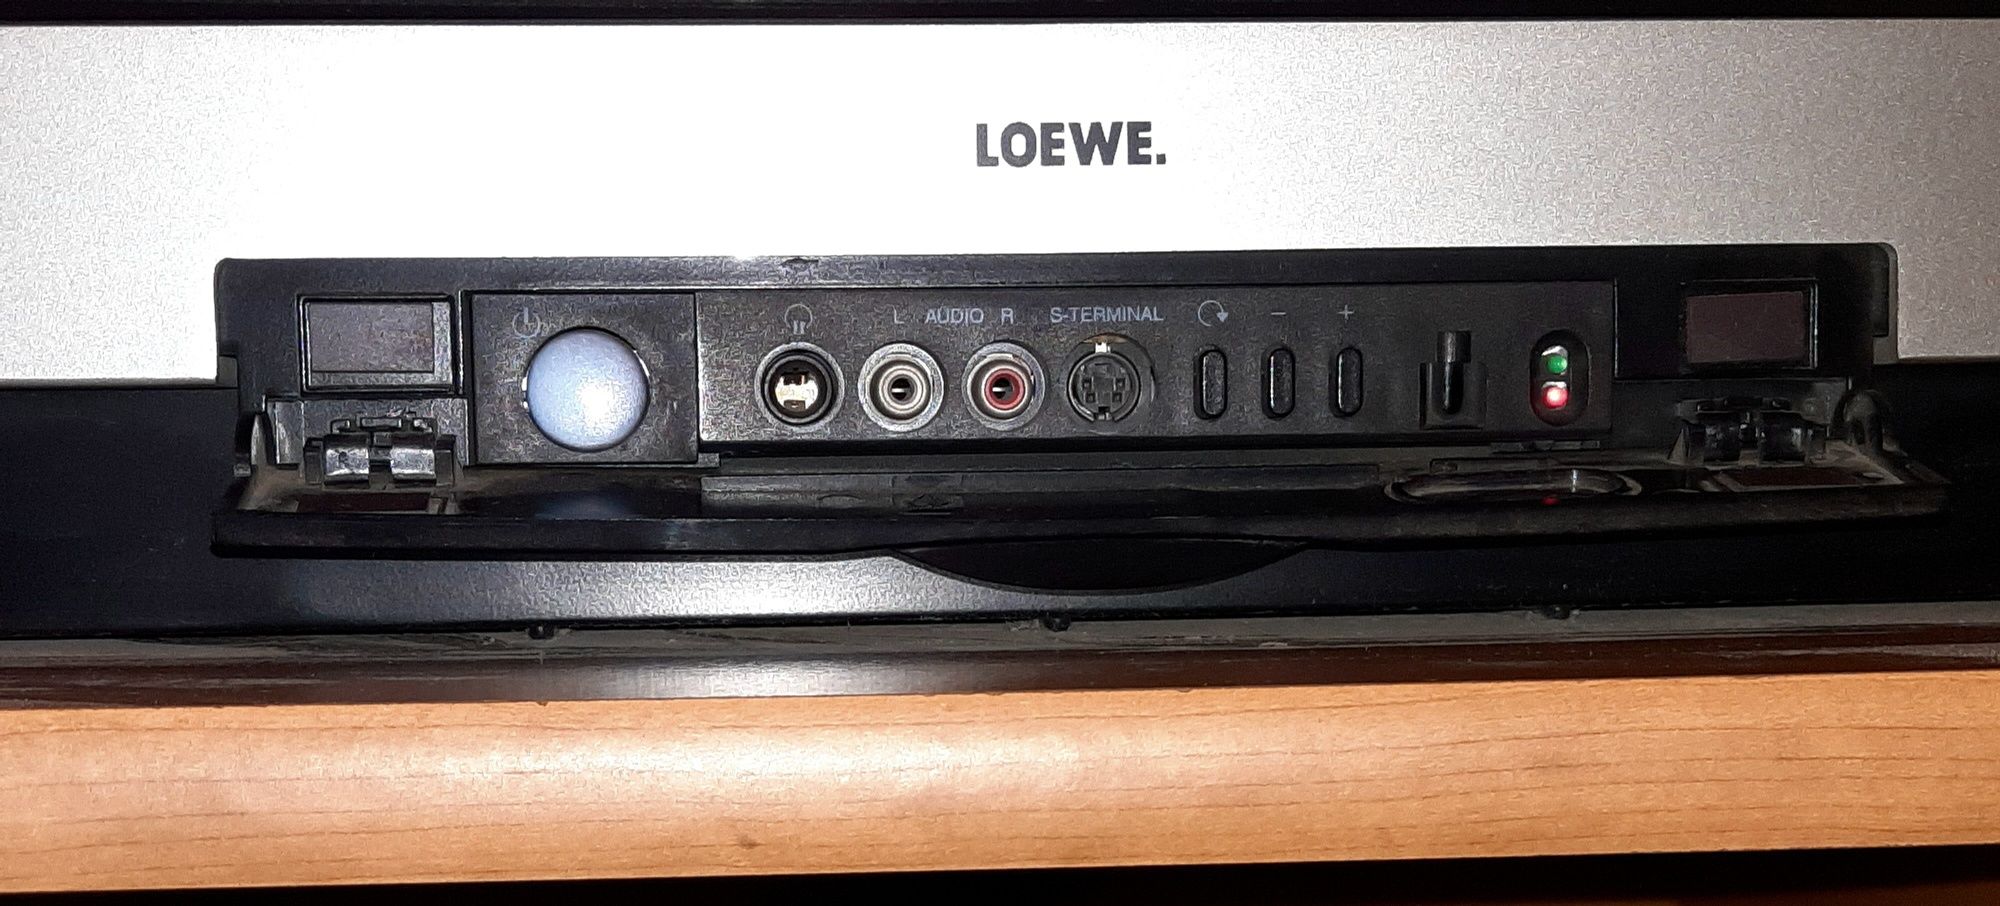 ПРОДАМ культовый ретро HI-End телевизор Loewe Arcada 8772 ZP 2003 г.в.